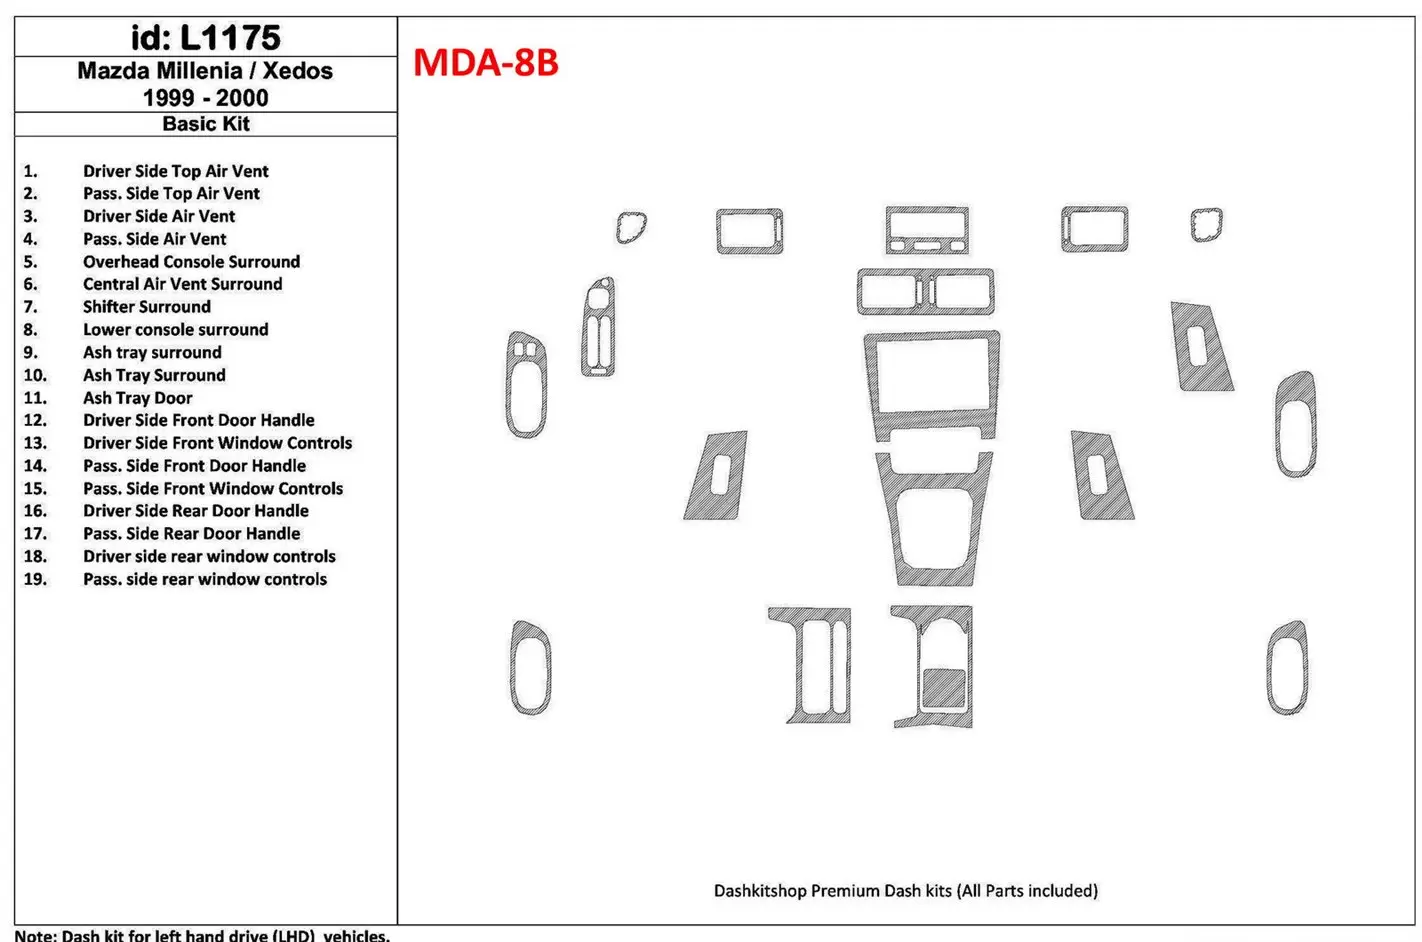 Mazda Milenia 1999-2000 Paquet de base, Sans OEM, 19 Parts set BD Kit la décoration du tableau de bord - 1 - habillage decor de 